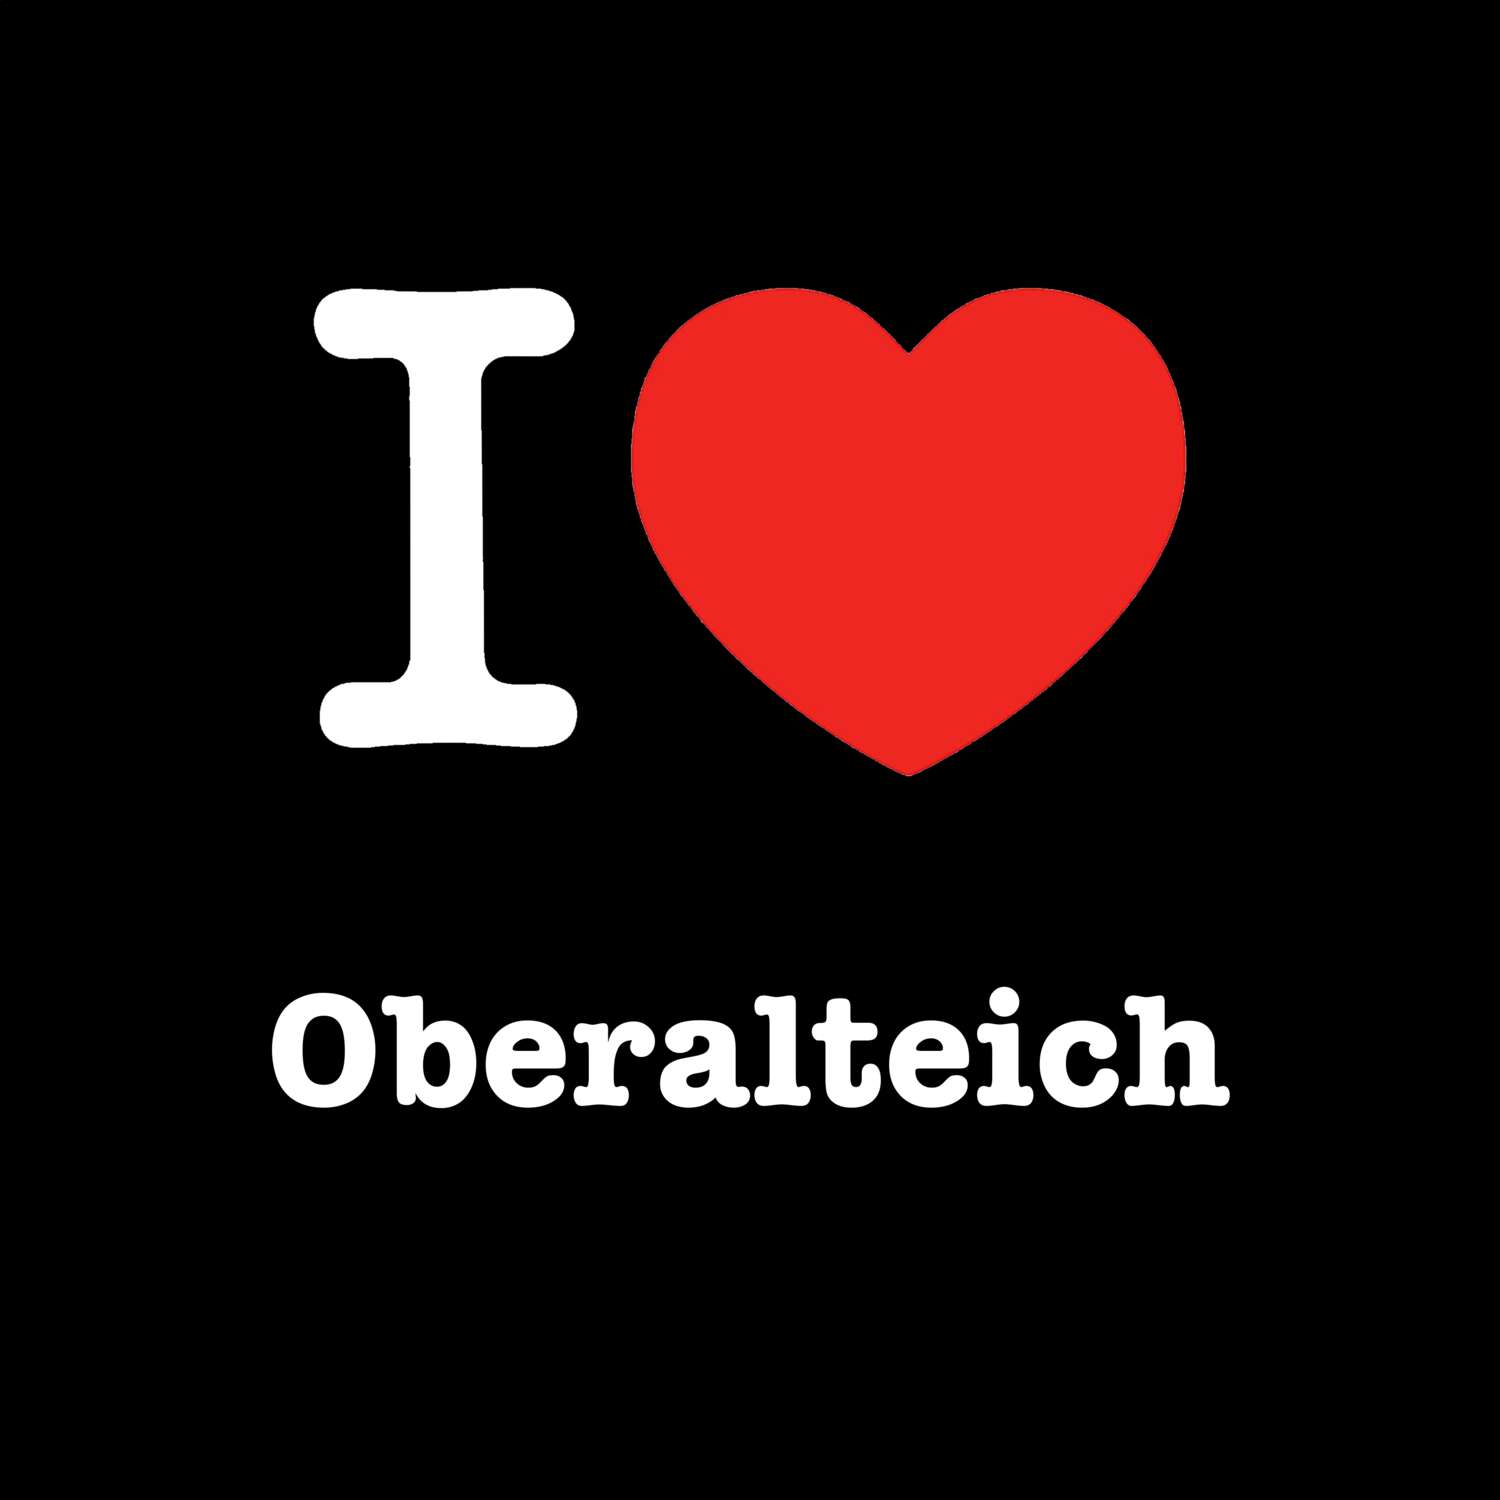 Oberalteich T-Shirt »I love«